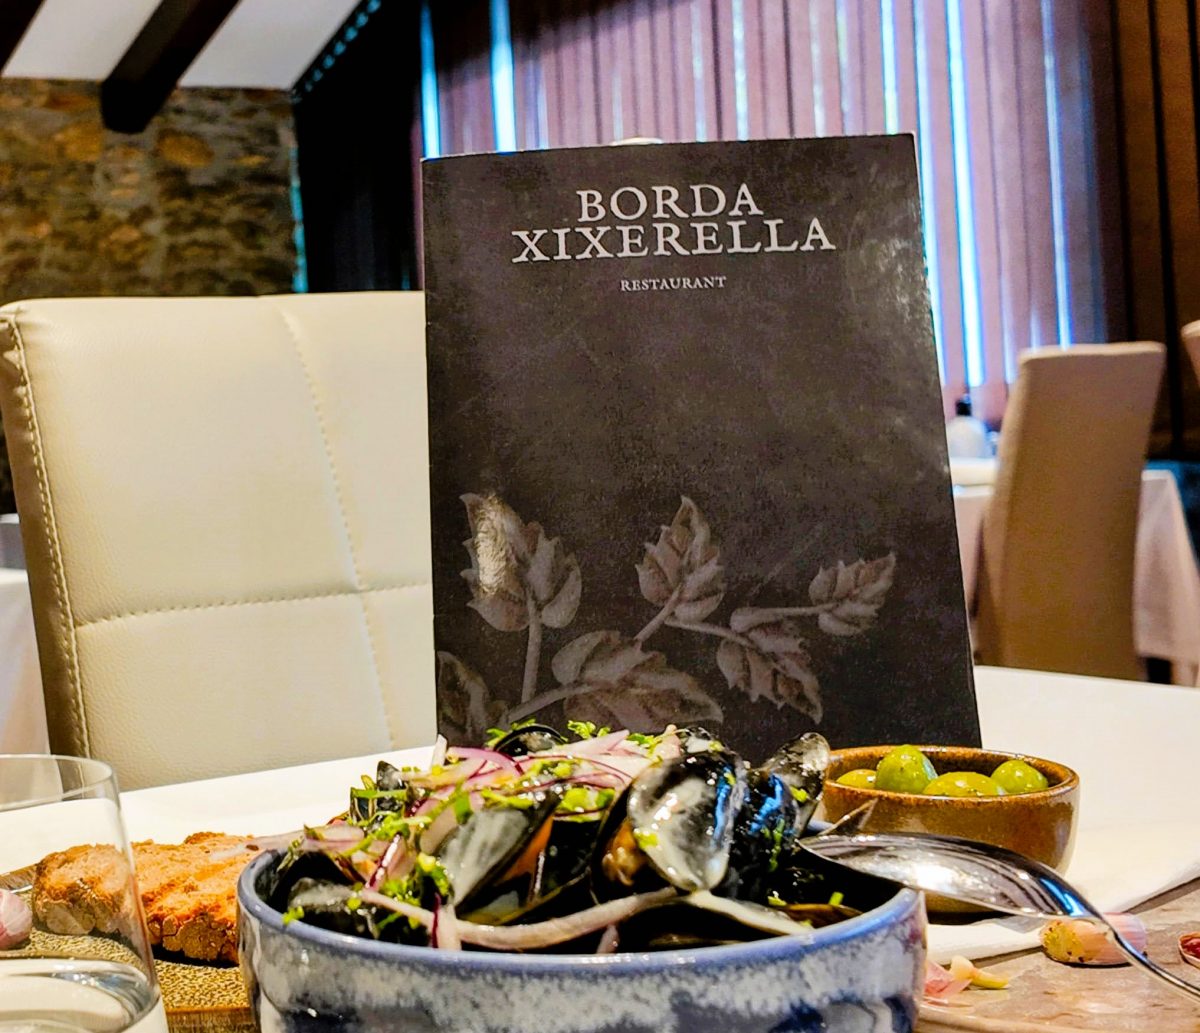 En el Restaurante Borda Xixerella Borda típica Andorrana nos complacemos en presentar nuevos platos del día, como los deliciosos mejillones estilo tailandés o refrescante Ceviche de salmón, una explosión de frescura y sabor que deleitará tu paladar.